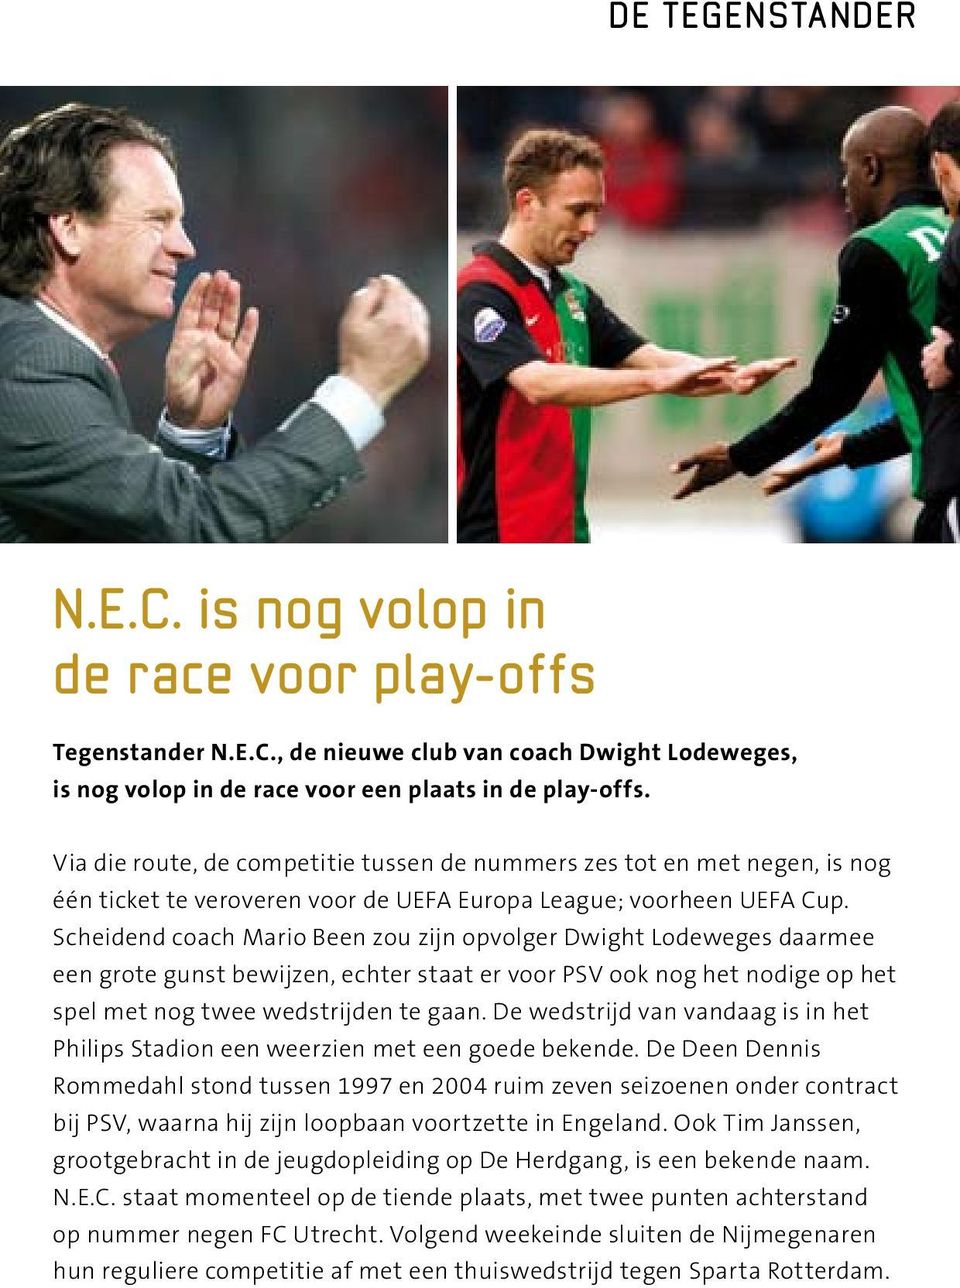 Scheidend coach Mario Been zou zijn opvolger Dwight Lodeweges daarmee een grote gunst bewijzen, echter staat er voor PSV ook nog het nodige op het spel met nog twee wedstrijden te gaan.